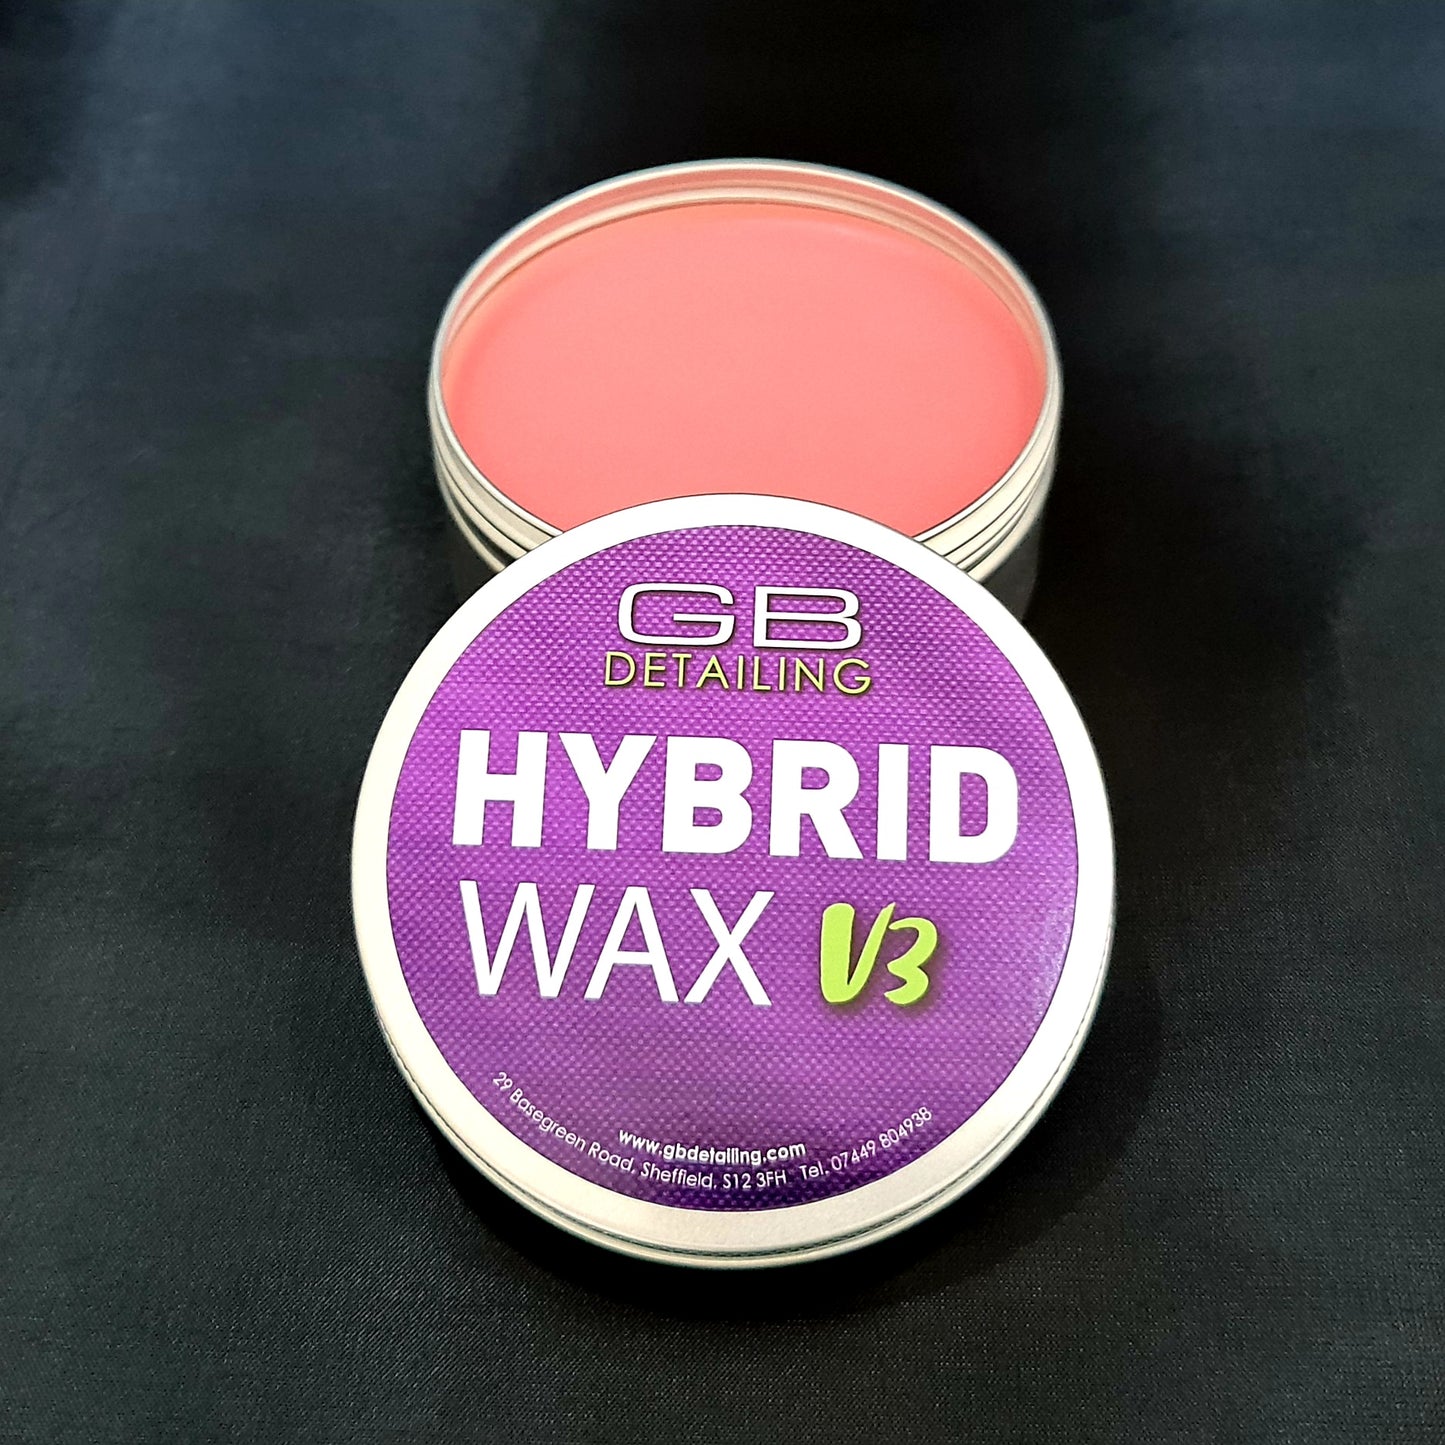 GB Detailing hybrid wax v3 paste wax 